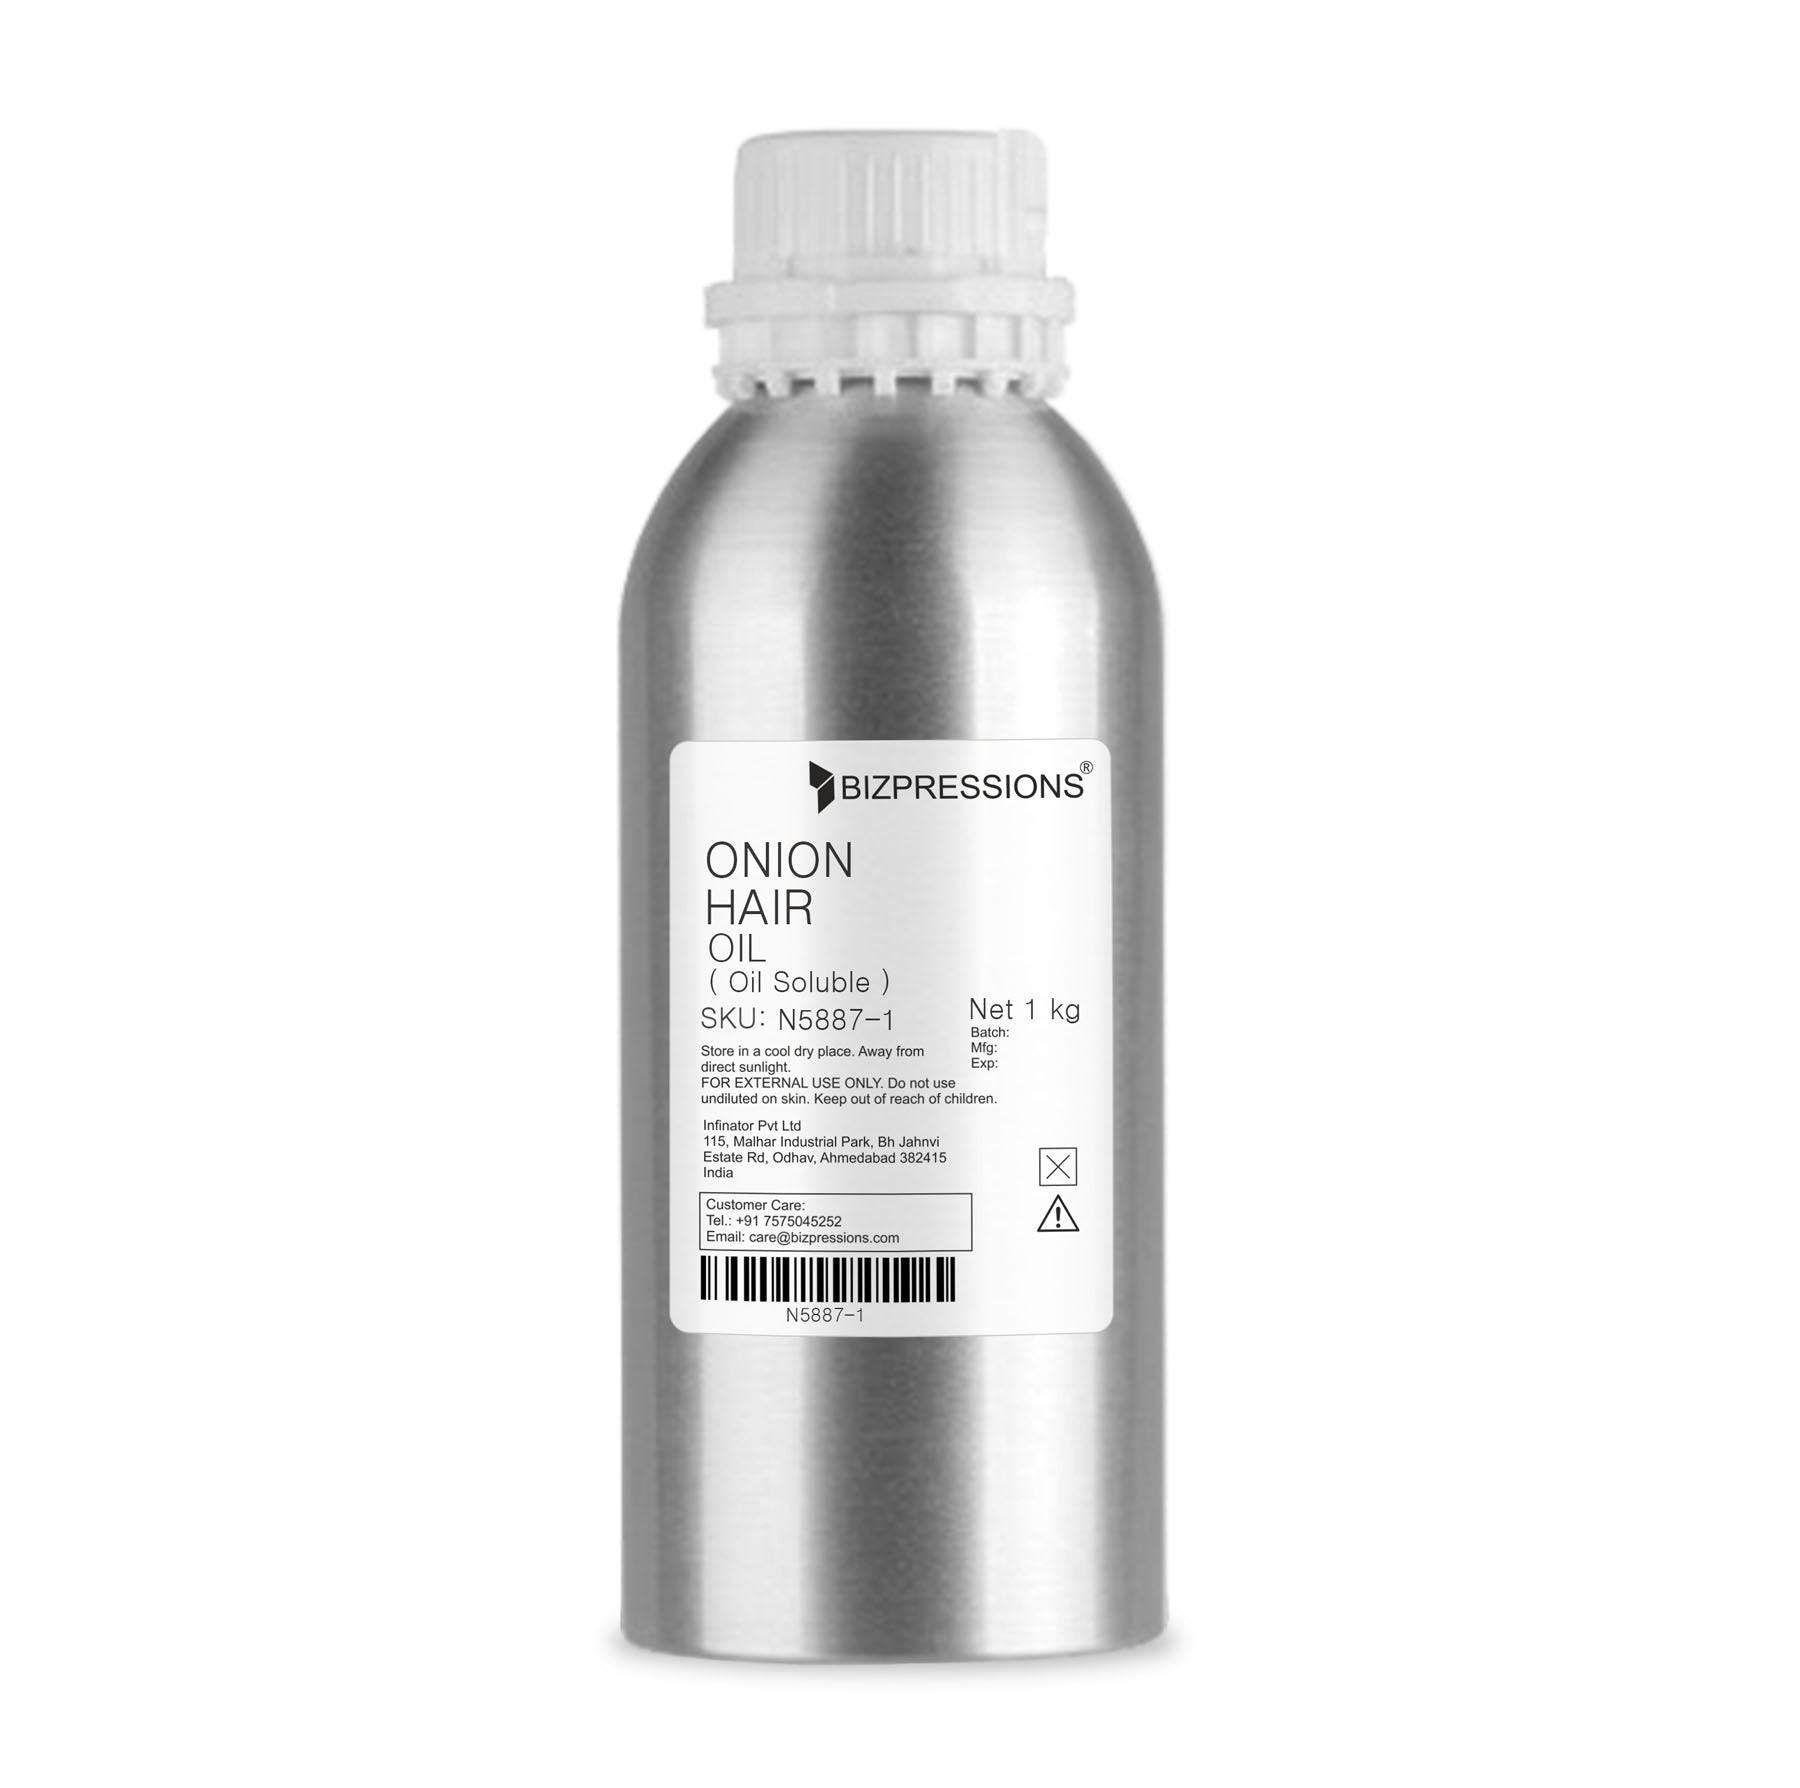 ONION HAIR OIL - Fragrance ( Oil Soluble ) - 1 kg